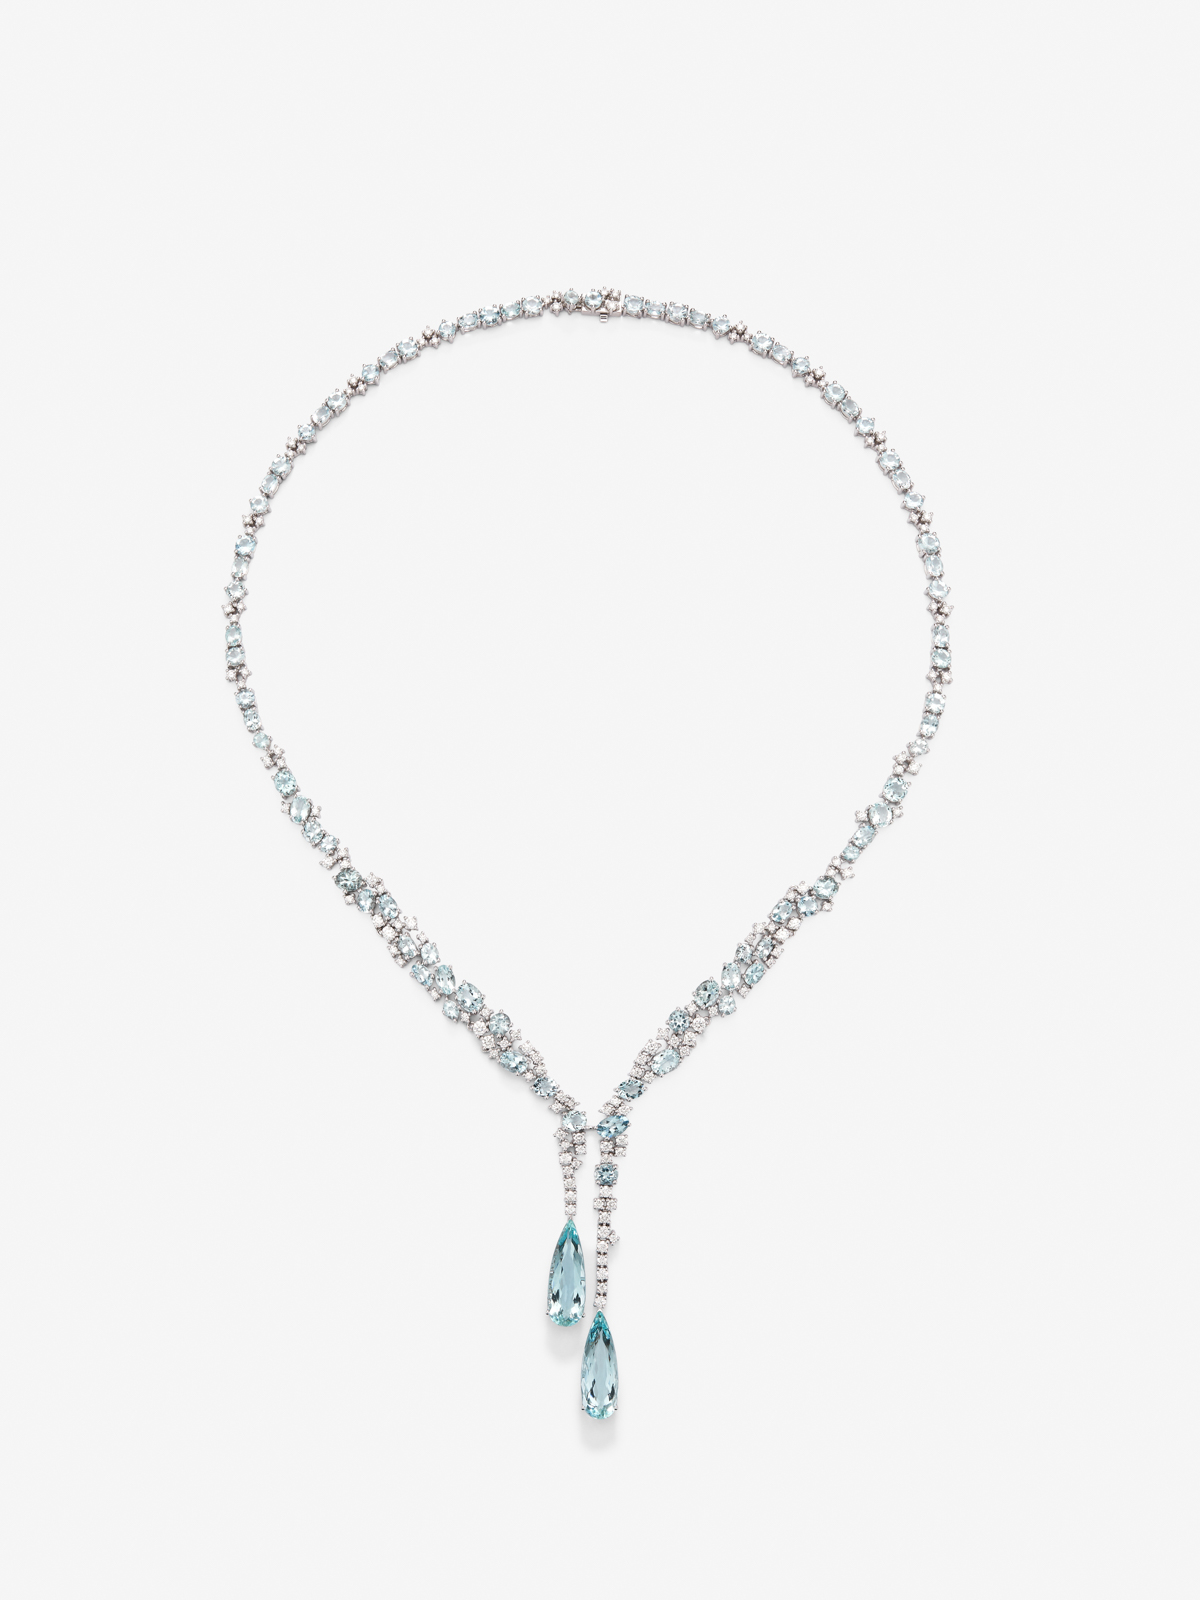 Collar de oro blanco de 18K con aguamarinas azules en talla pera de 9,9 cts y diamantes blancos en talla brillante de 5,15 cts